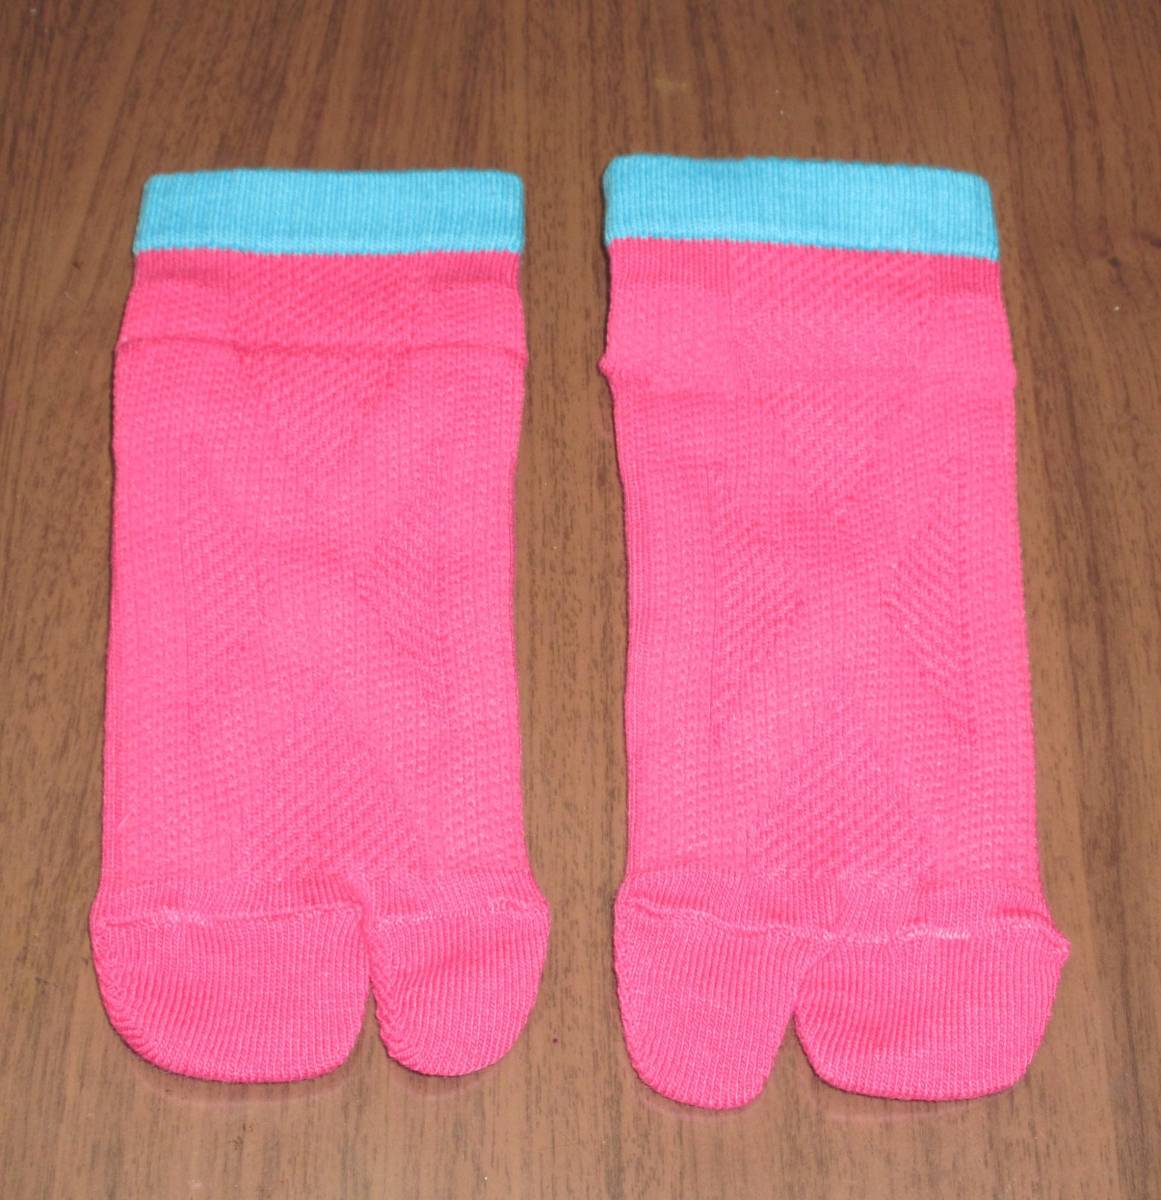 新品☆ 未使用☆ 助野 靴下 歩きやすい テーピング効果 つま先があがりやすい 抗菌 防臭 目立つ かわいい ピンク 23 24 25_上面。ピンクと水色で目立ちます。